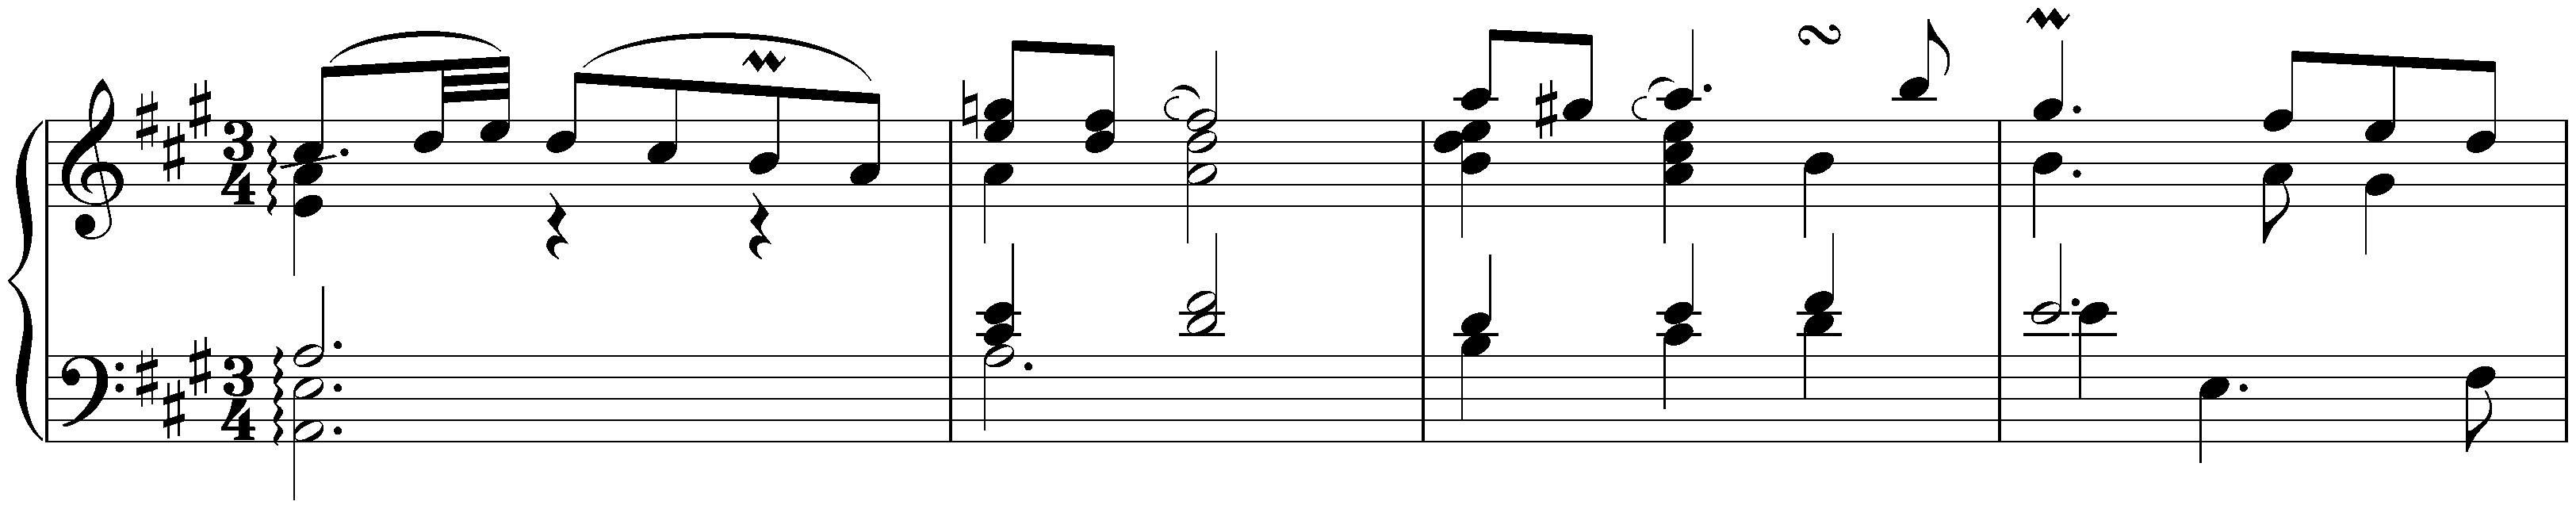 English Suite no. 1 in A major, BWV 806; 5. Sarabande